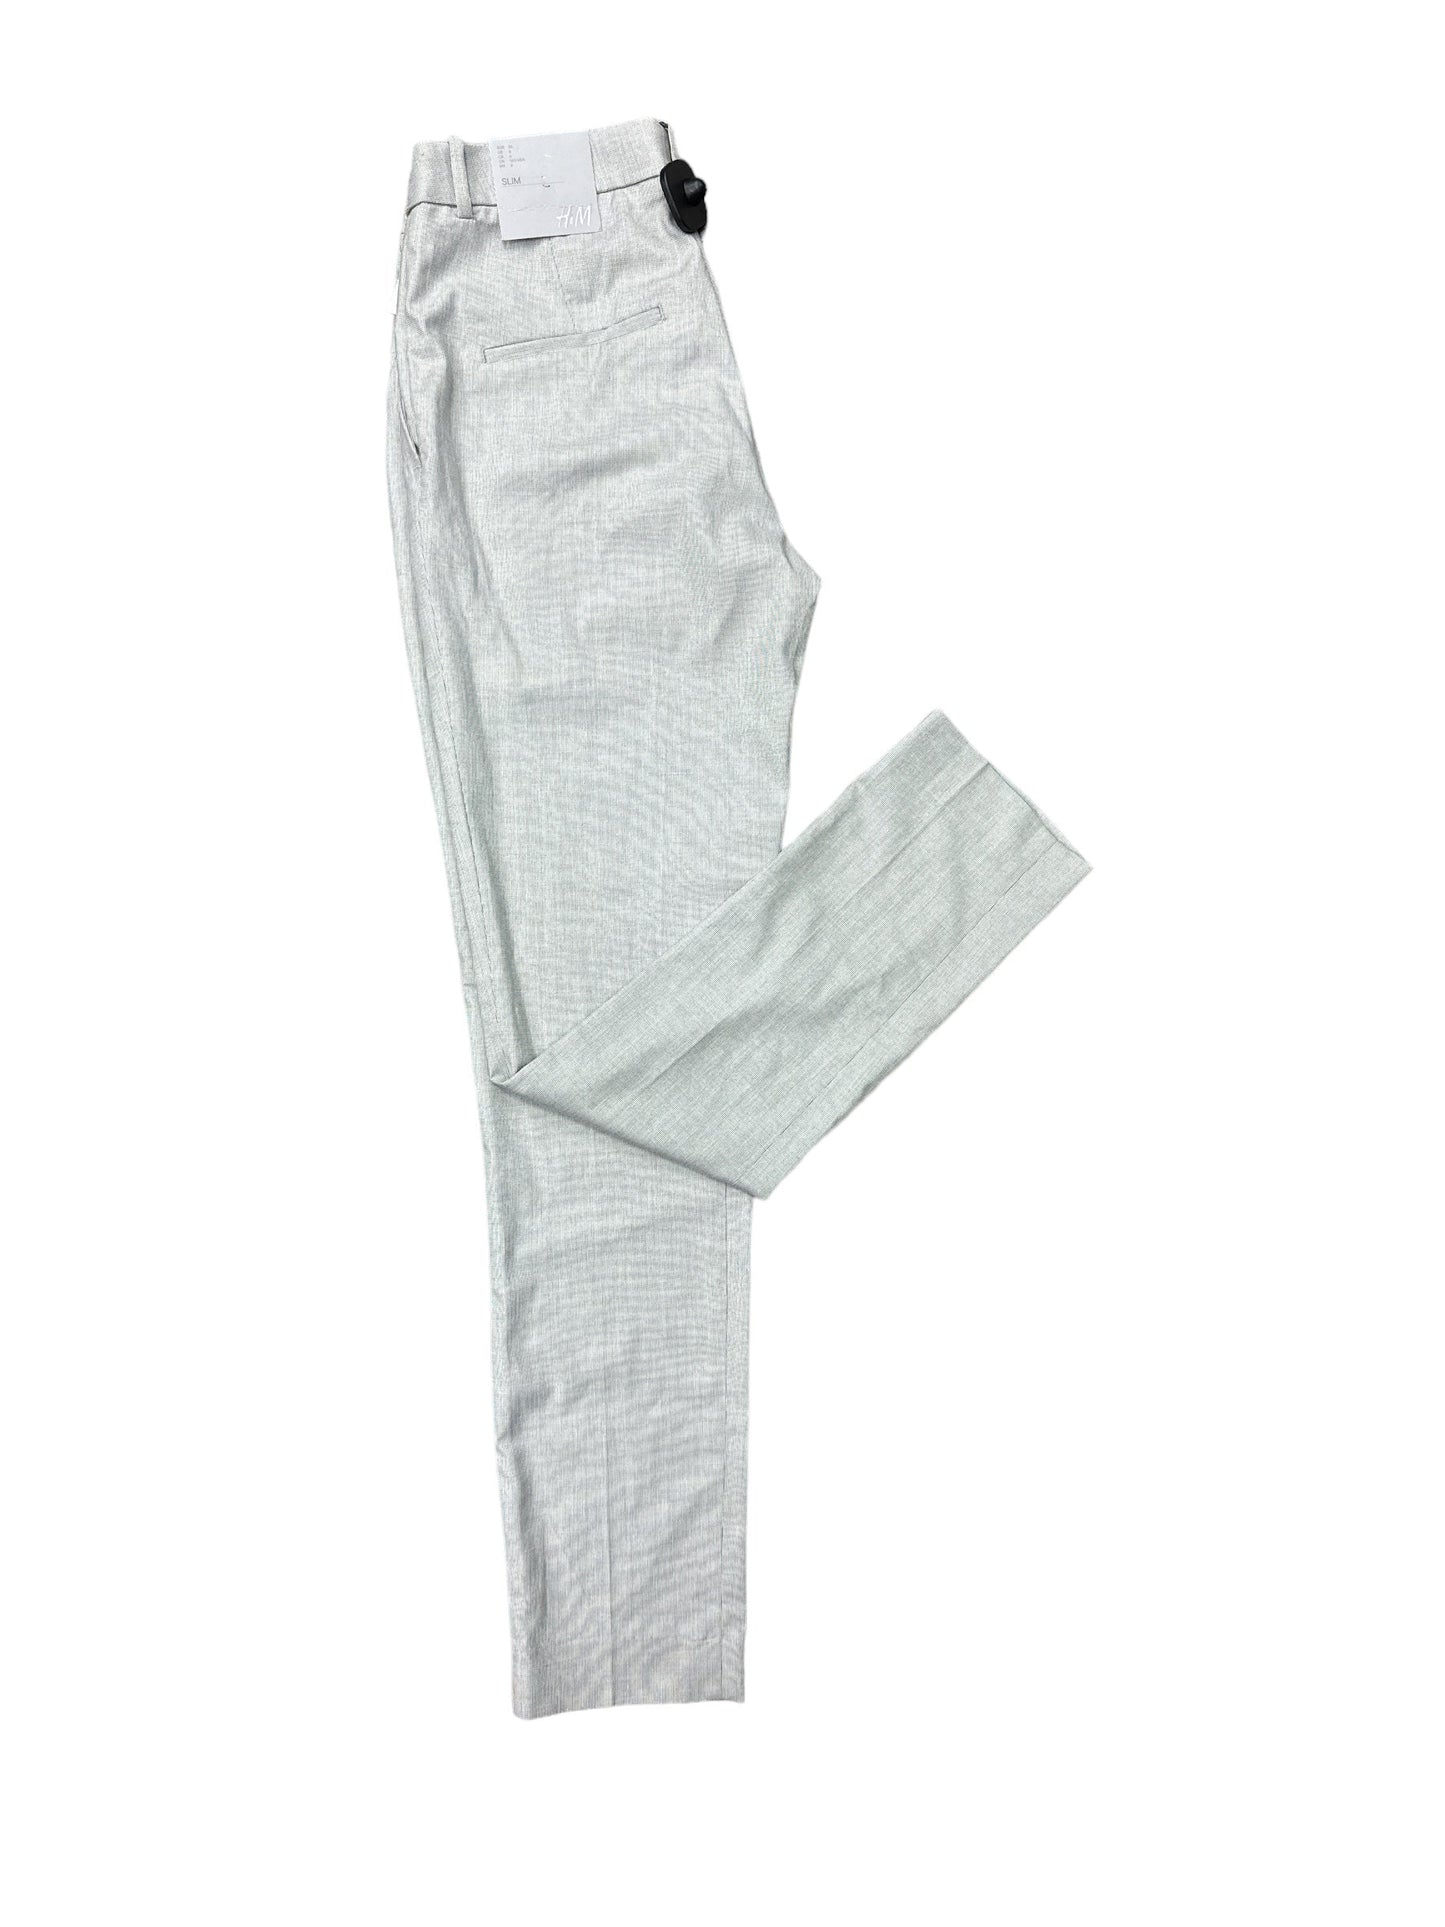 Pants Dress By H&m  Size: 6